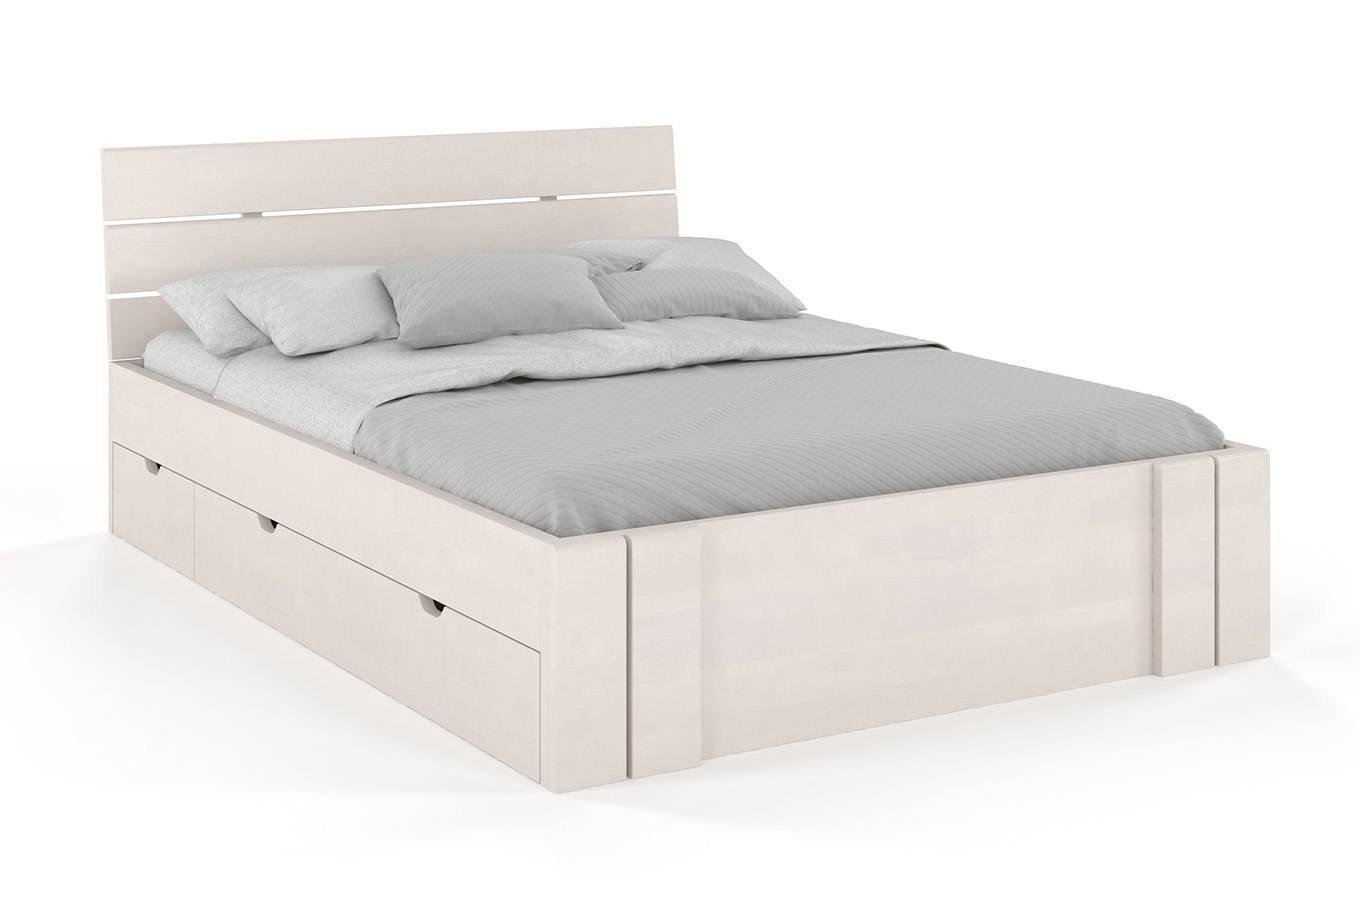 Łóżko drewniane bukowe Visby Arhus High Drawers (z szufladami) / 160x200 cm, kolor biały